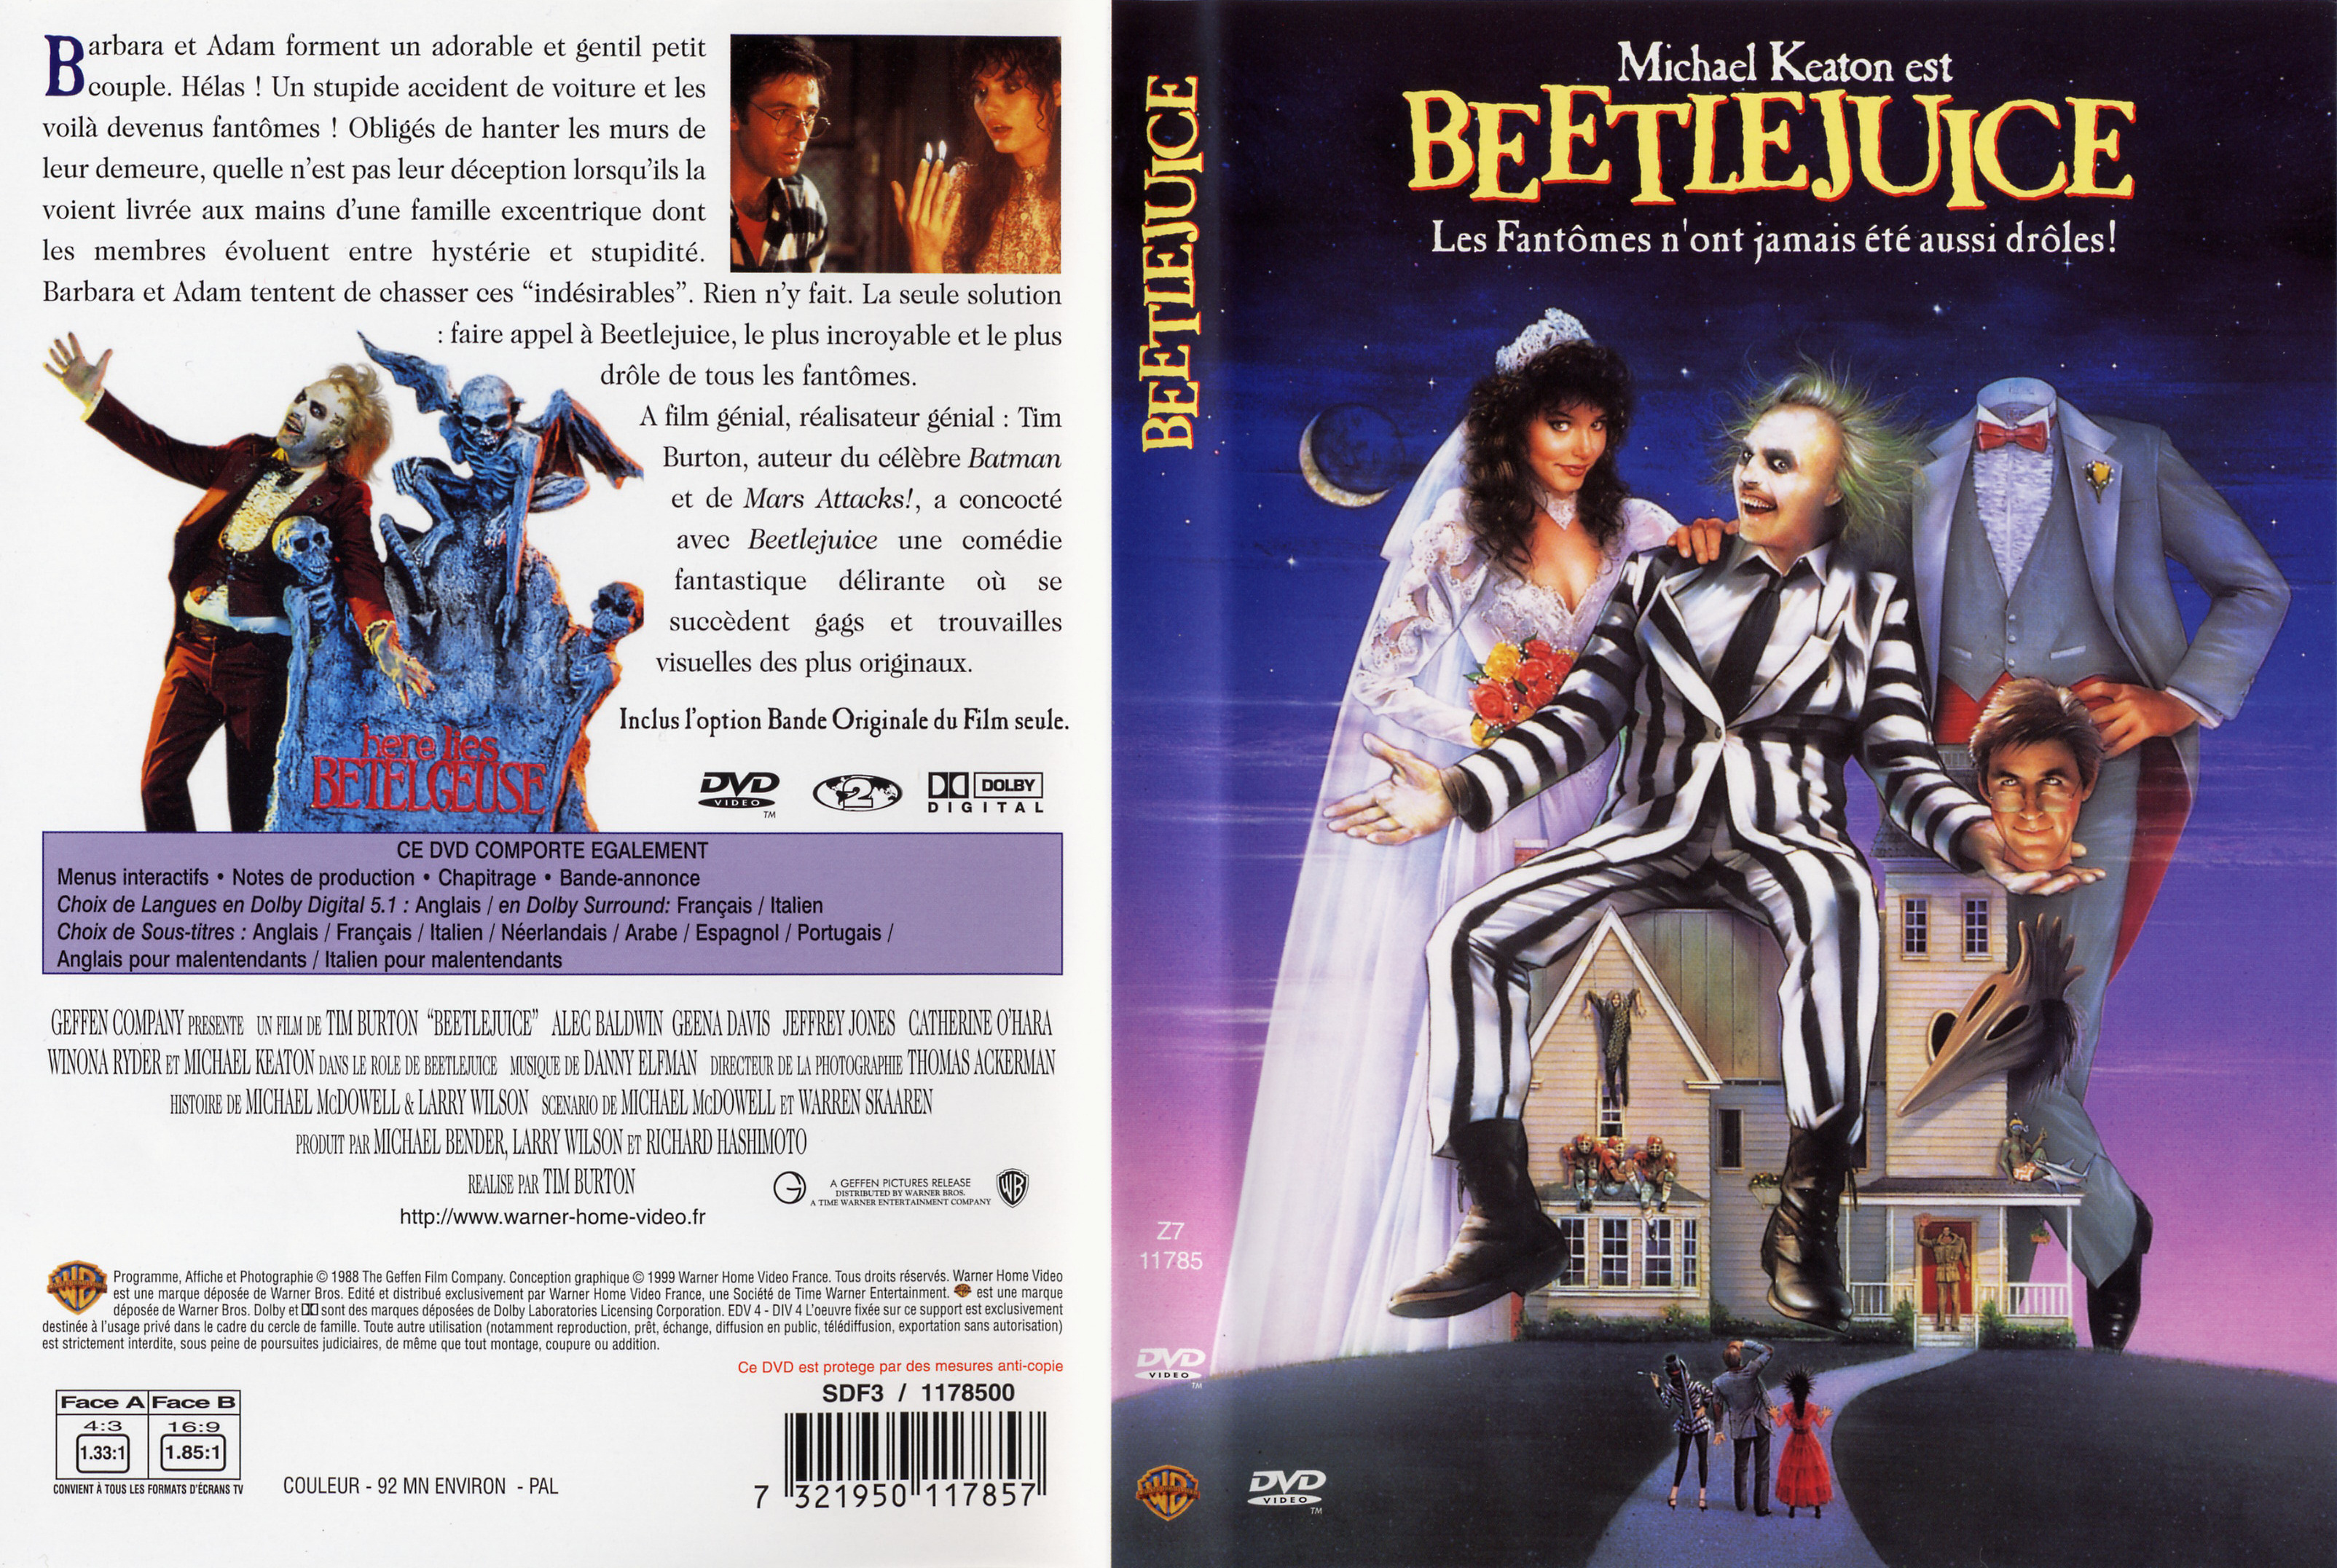 Jaquette DVD de Beetlejuice Cinéma Passion